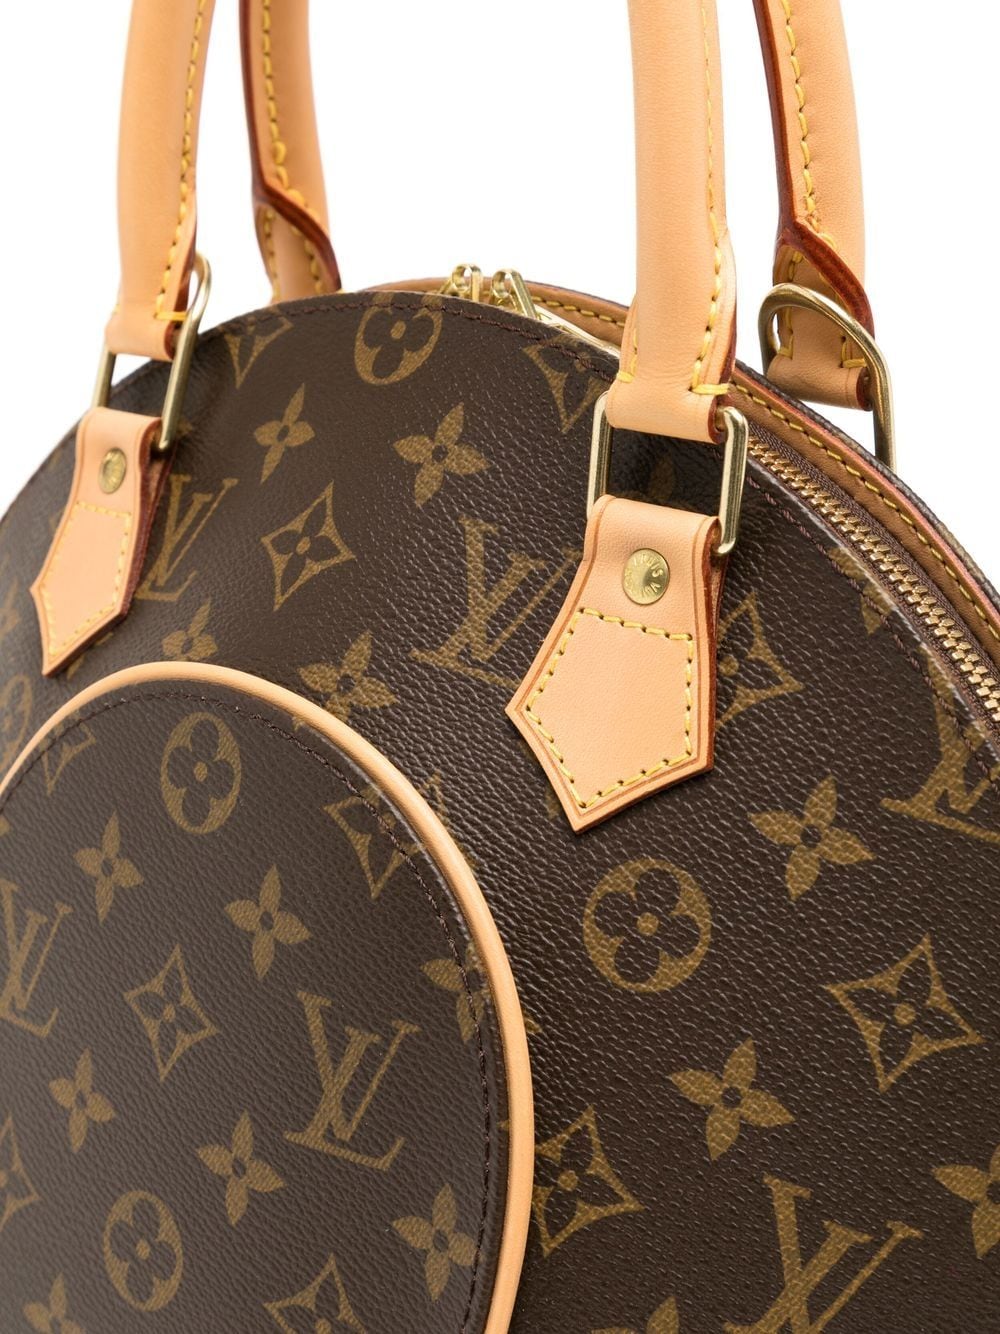 Louis Vuitton Ellipse PM Monogram Handbag Review  Lollipuff